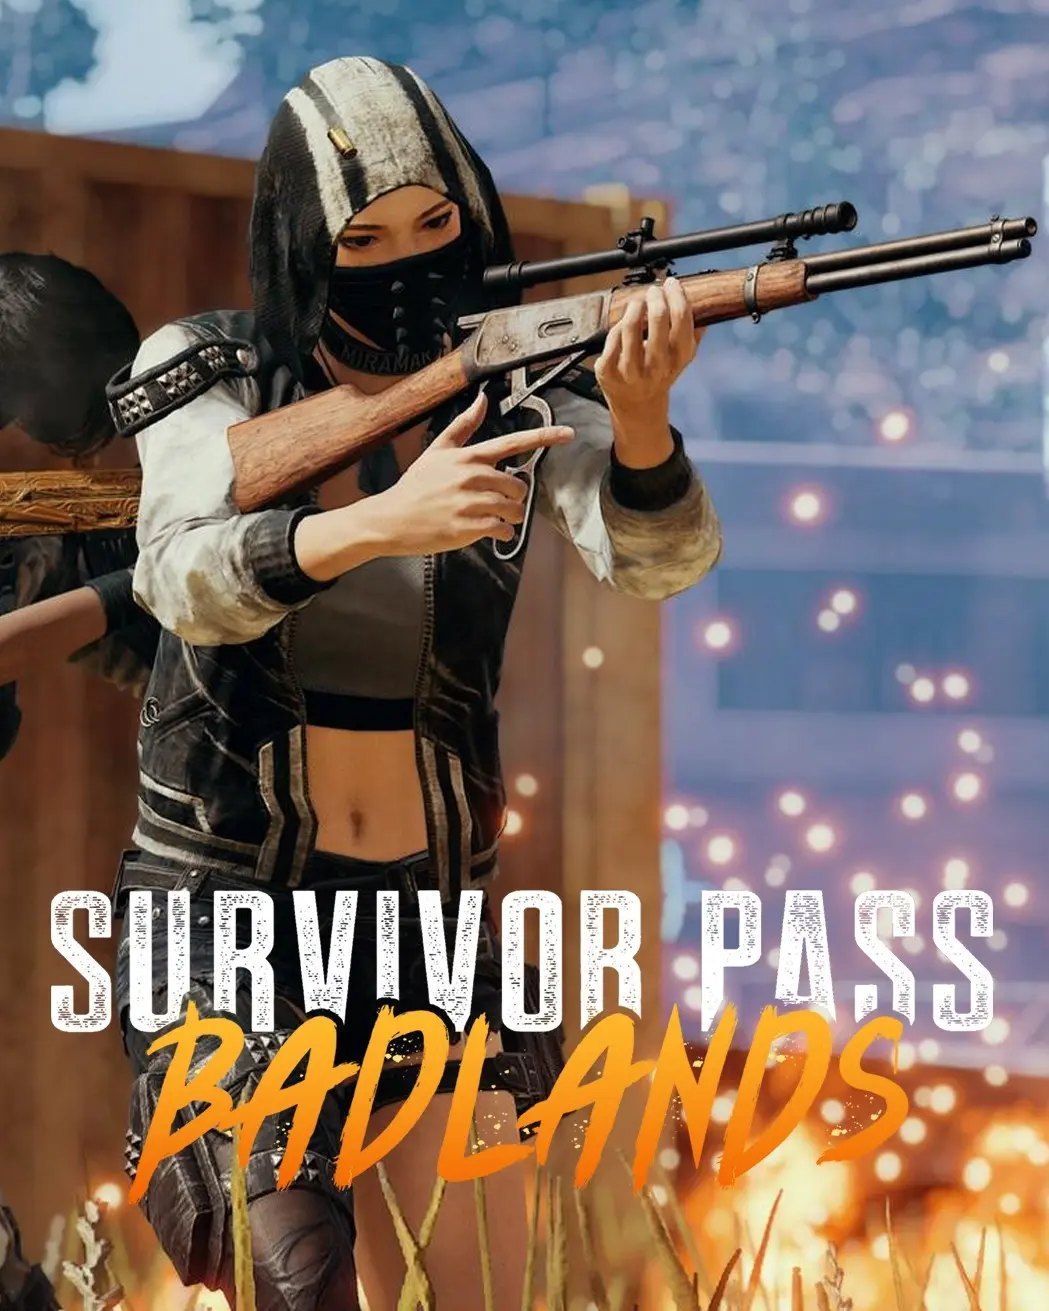 Playerunknown's Battlegrounds - Survivor Pass Badlands DLC (PC) - Steam - Digital Code